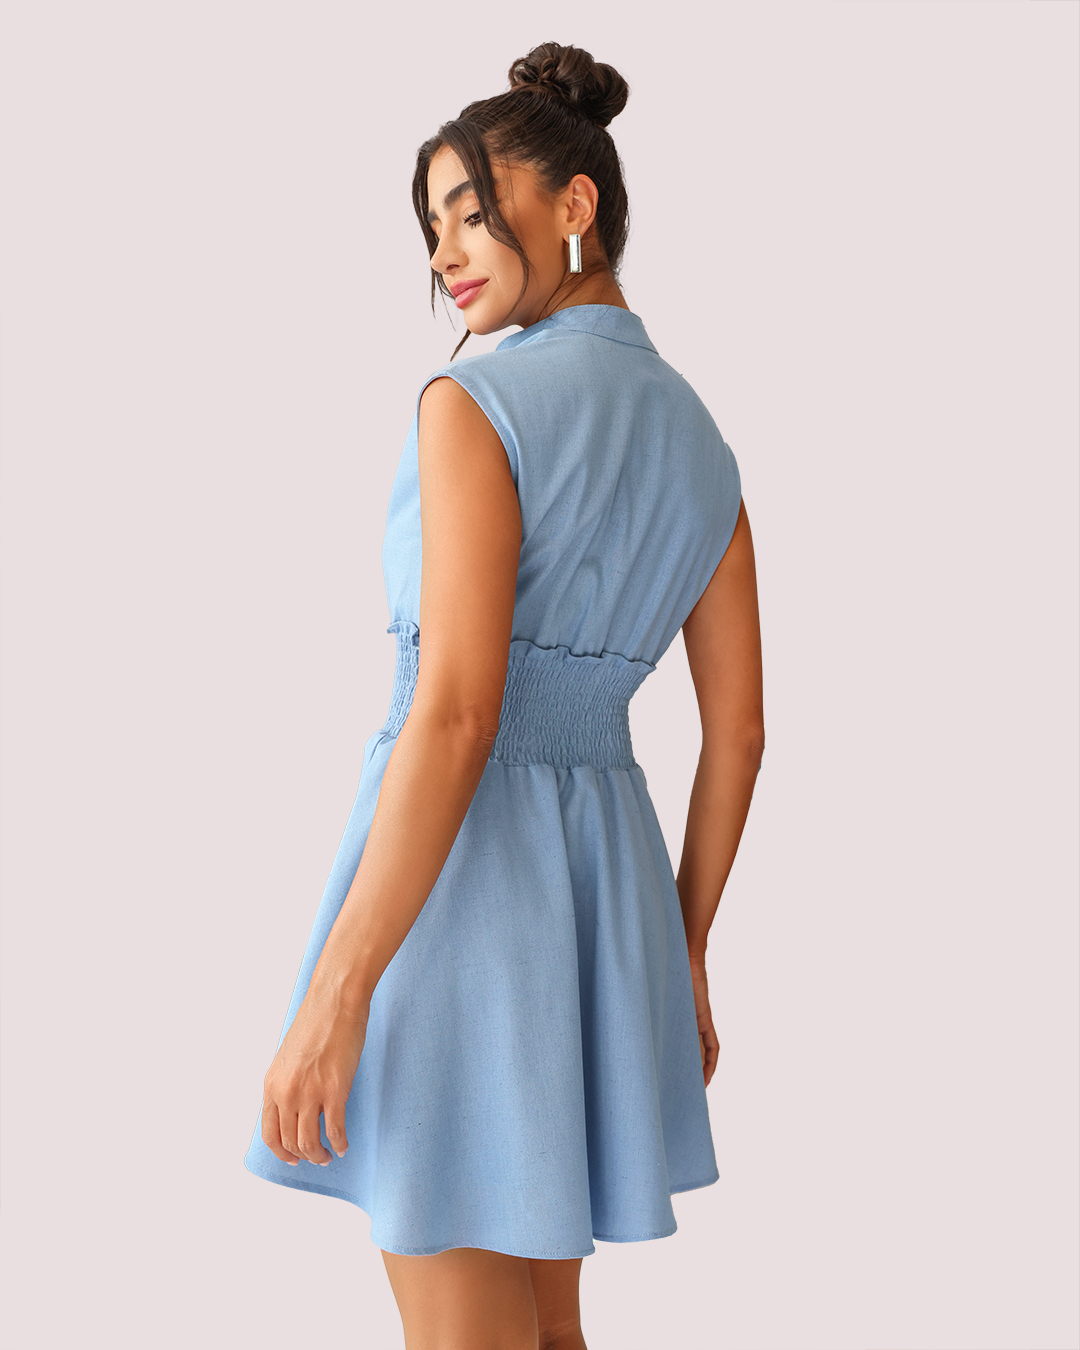 Dot Clothing - Vestido Dot Clothing Rodado em Linho Azul Claro - 1880AZCL